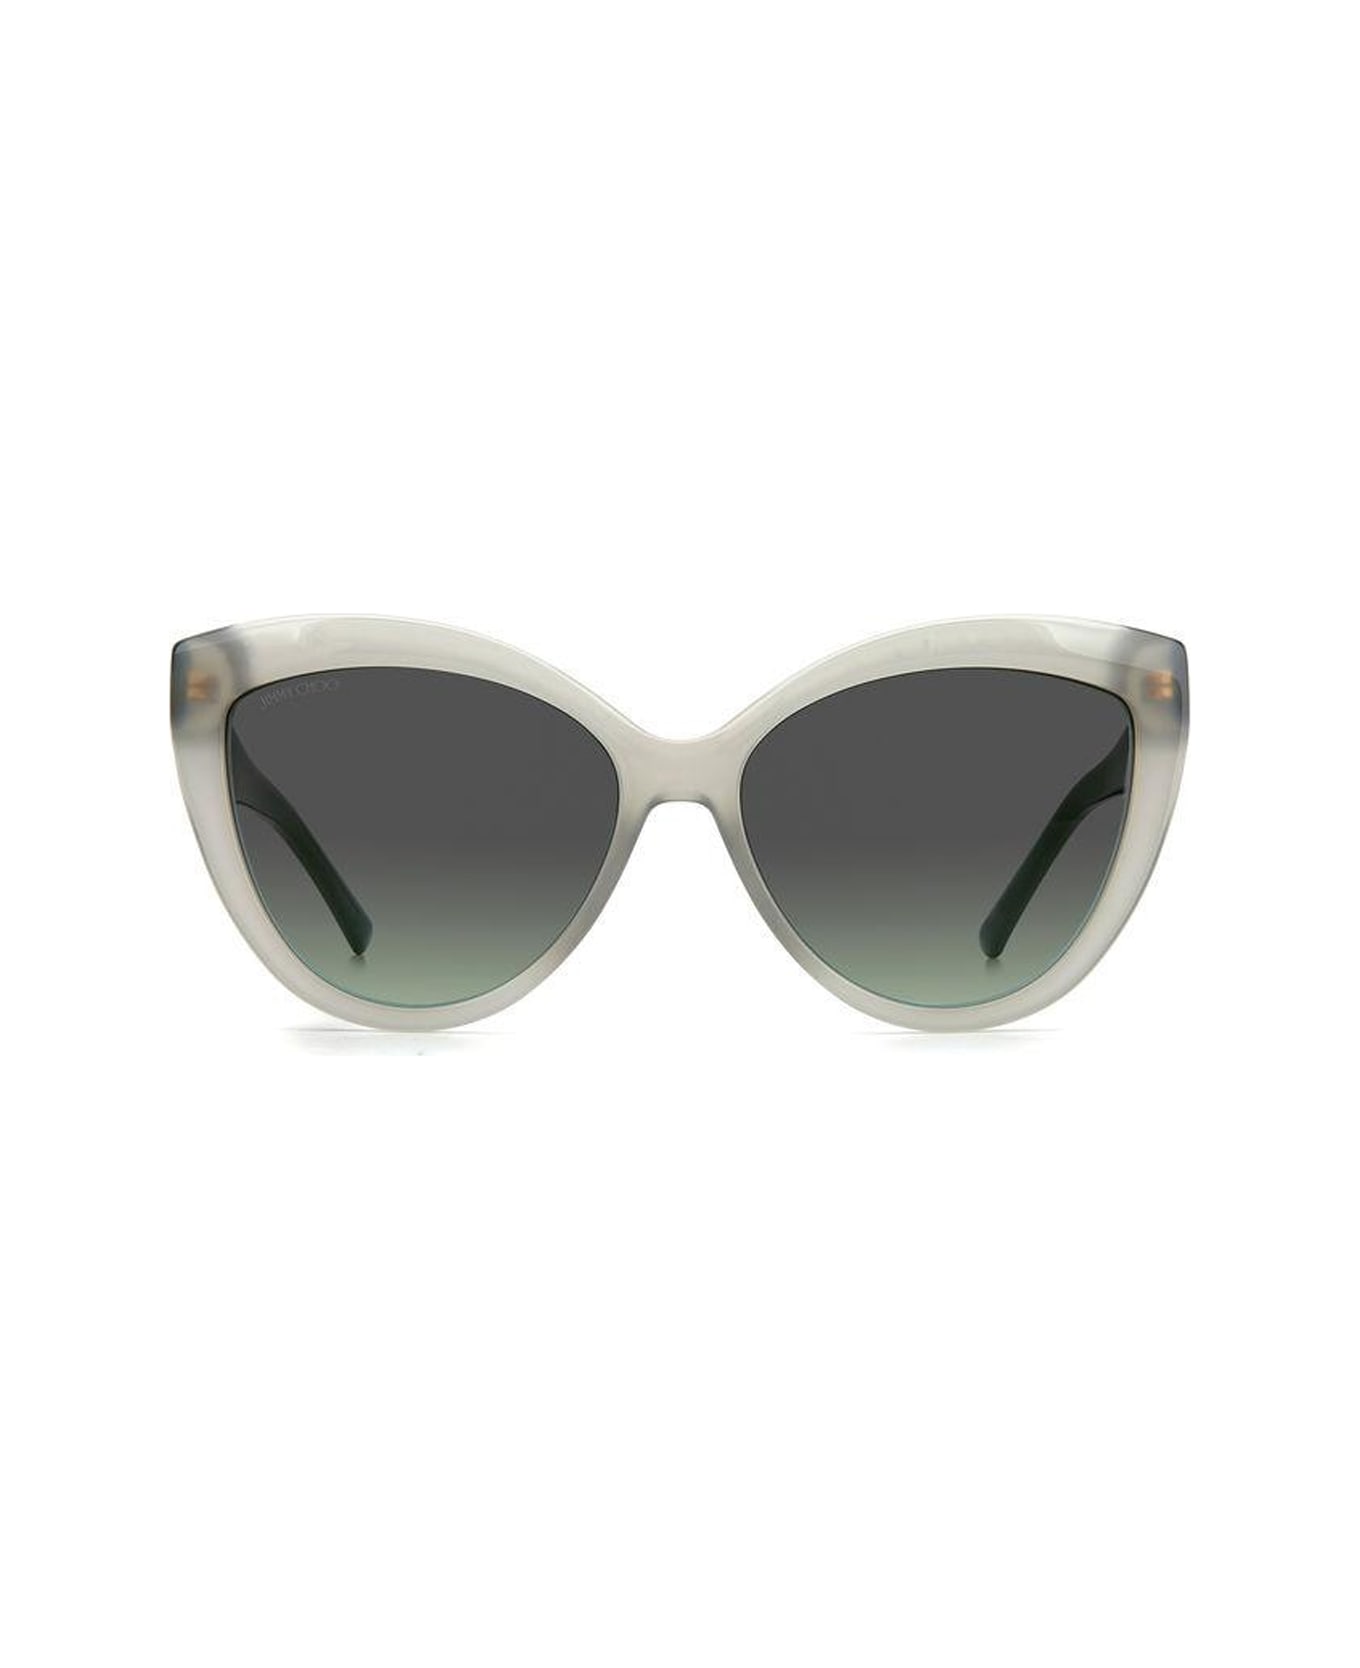 Jimmy Choo Eyewear Sinnie/g/s tinted Sunglasses - Verde